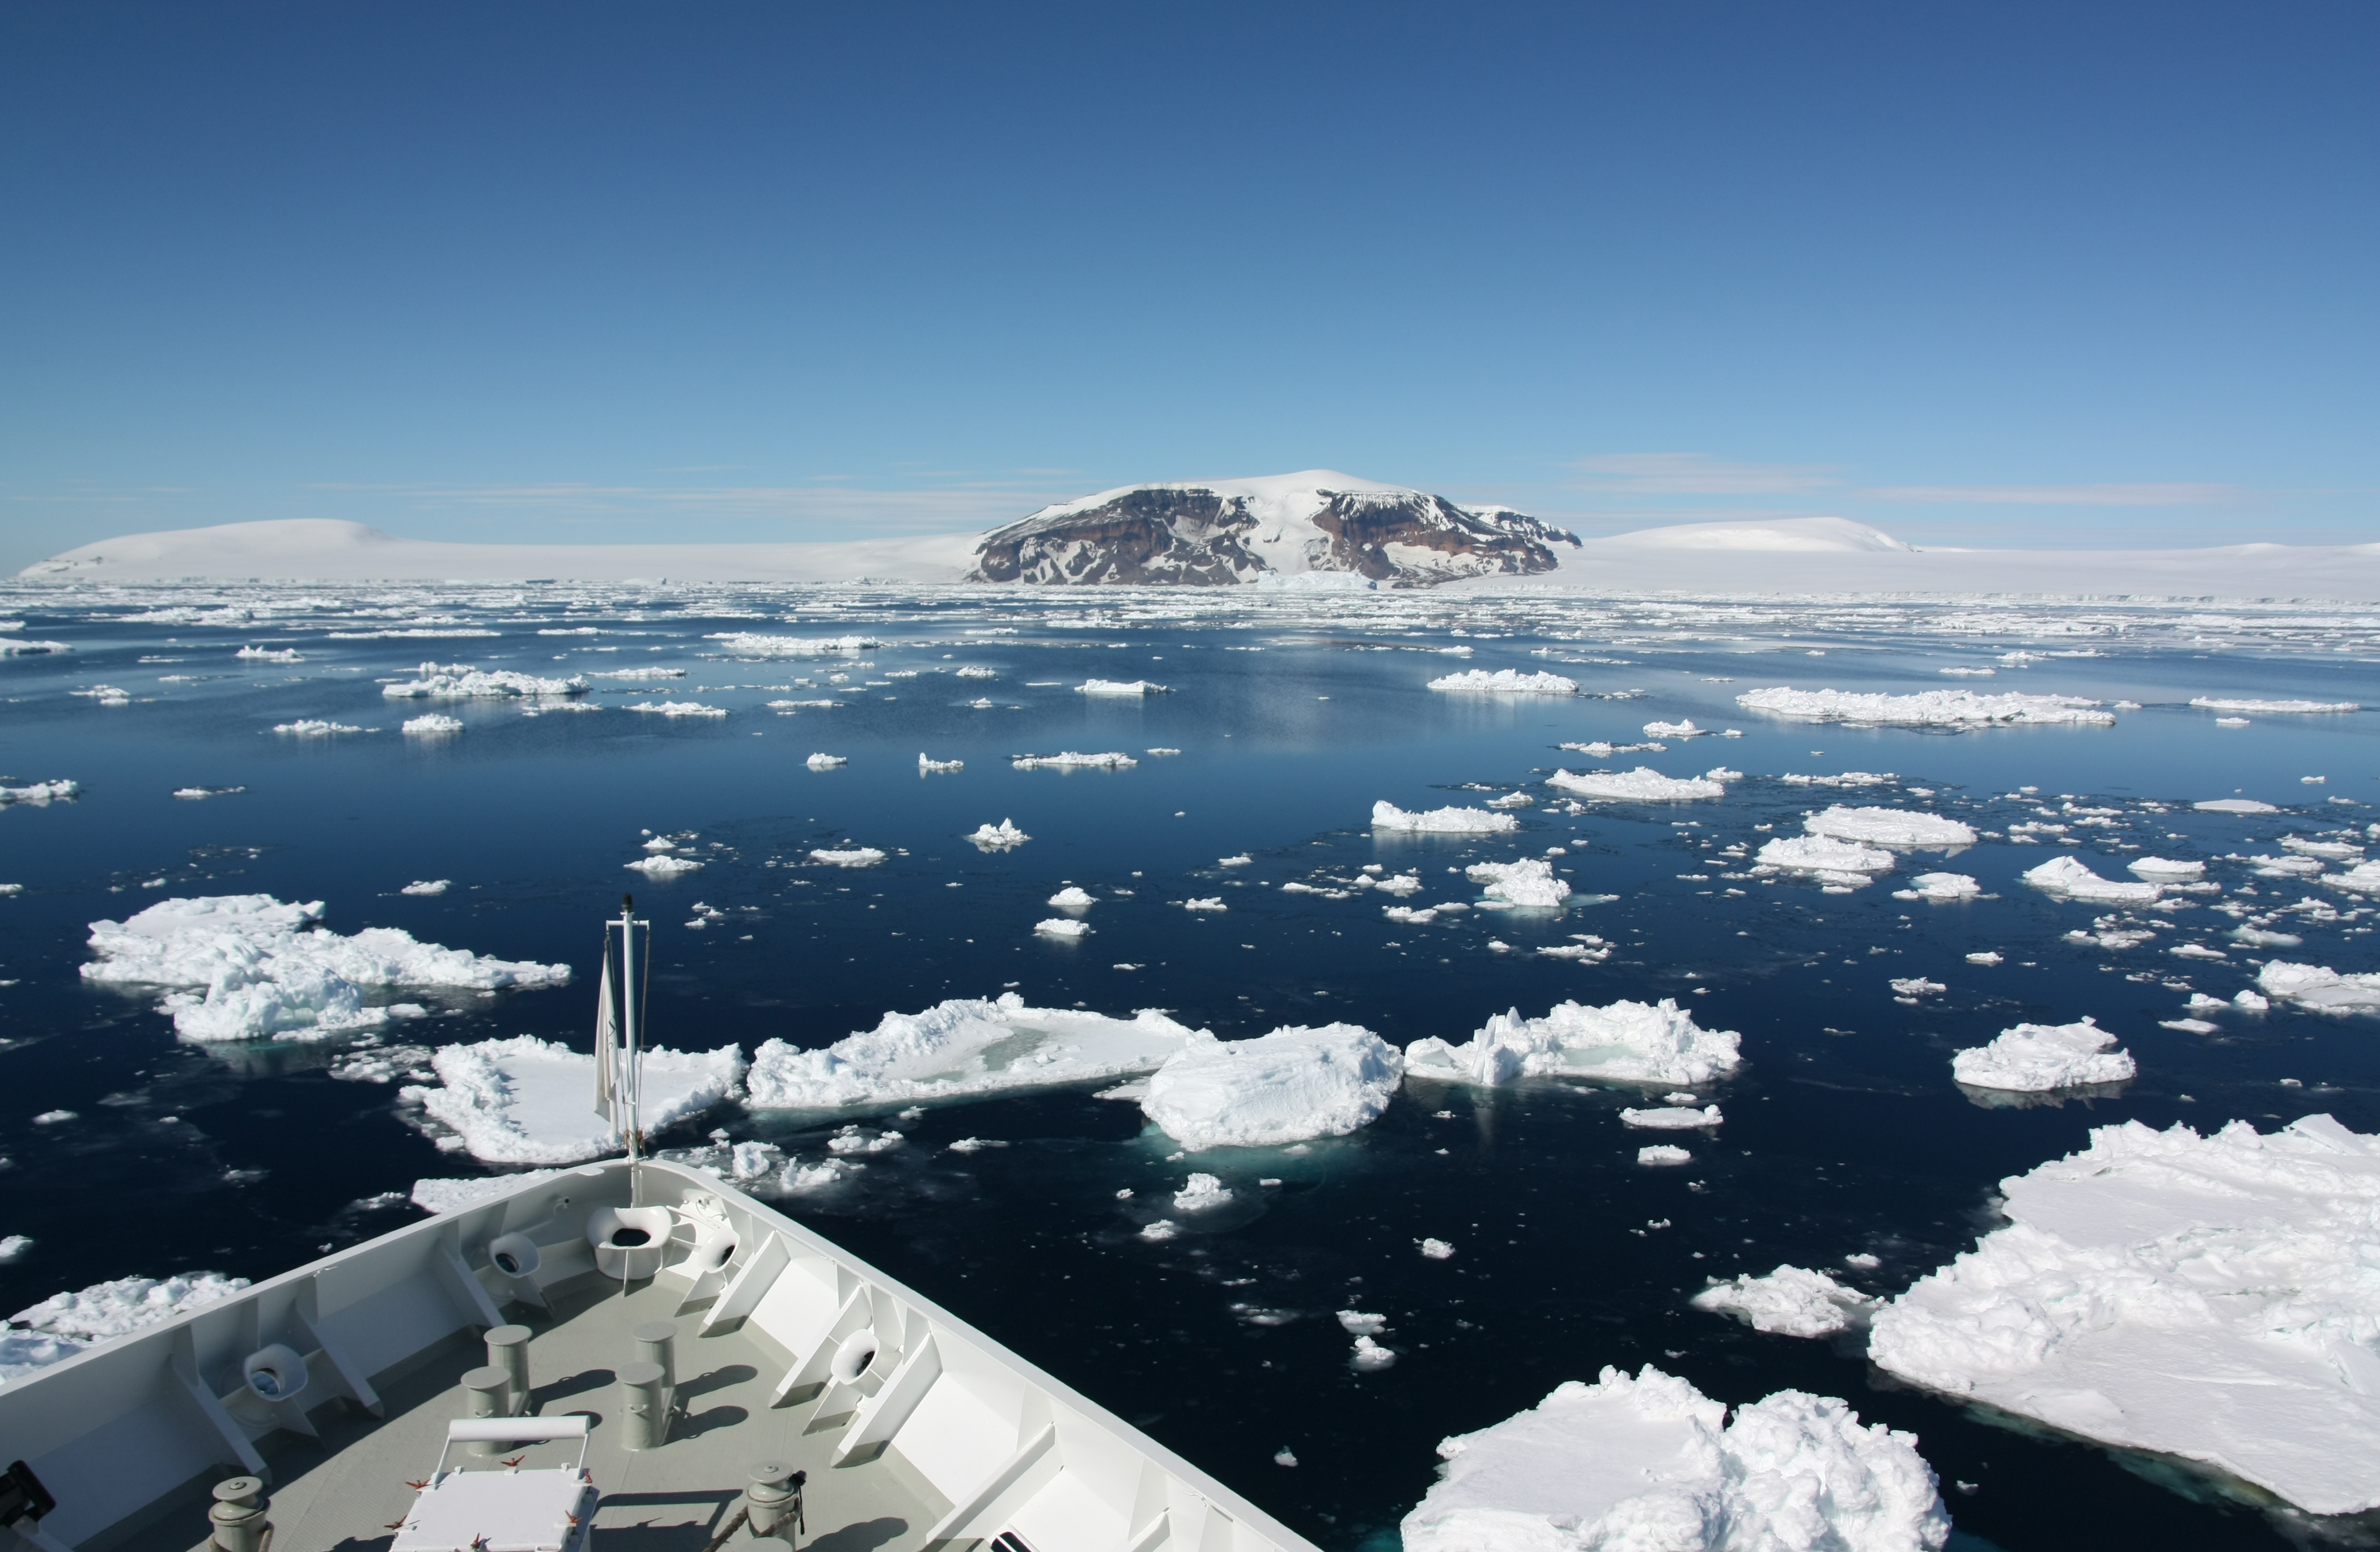 Die Aufnahme ist vom Bug eines Schiffes gemacht, so sind noch der vorderste Teil des Schiffes und dann das Südpolarmeer im Bild. Auf dem Wasser treiben Eisschollen und im Hintergrund ist antarktisches Festland. 